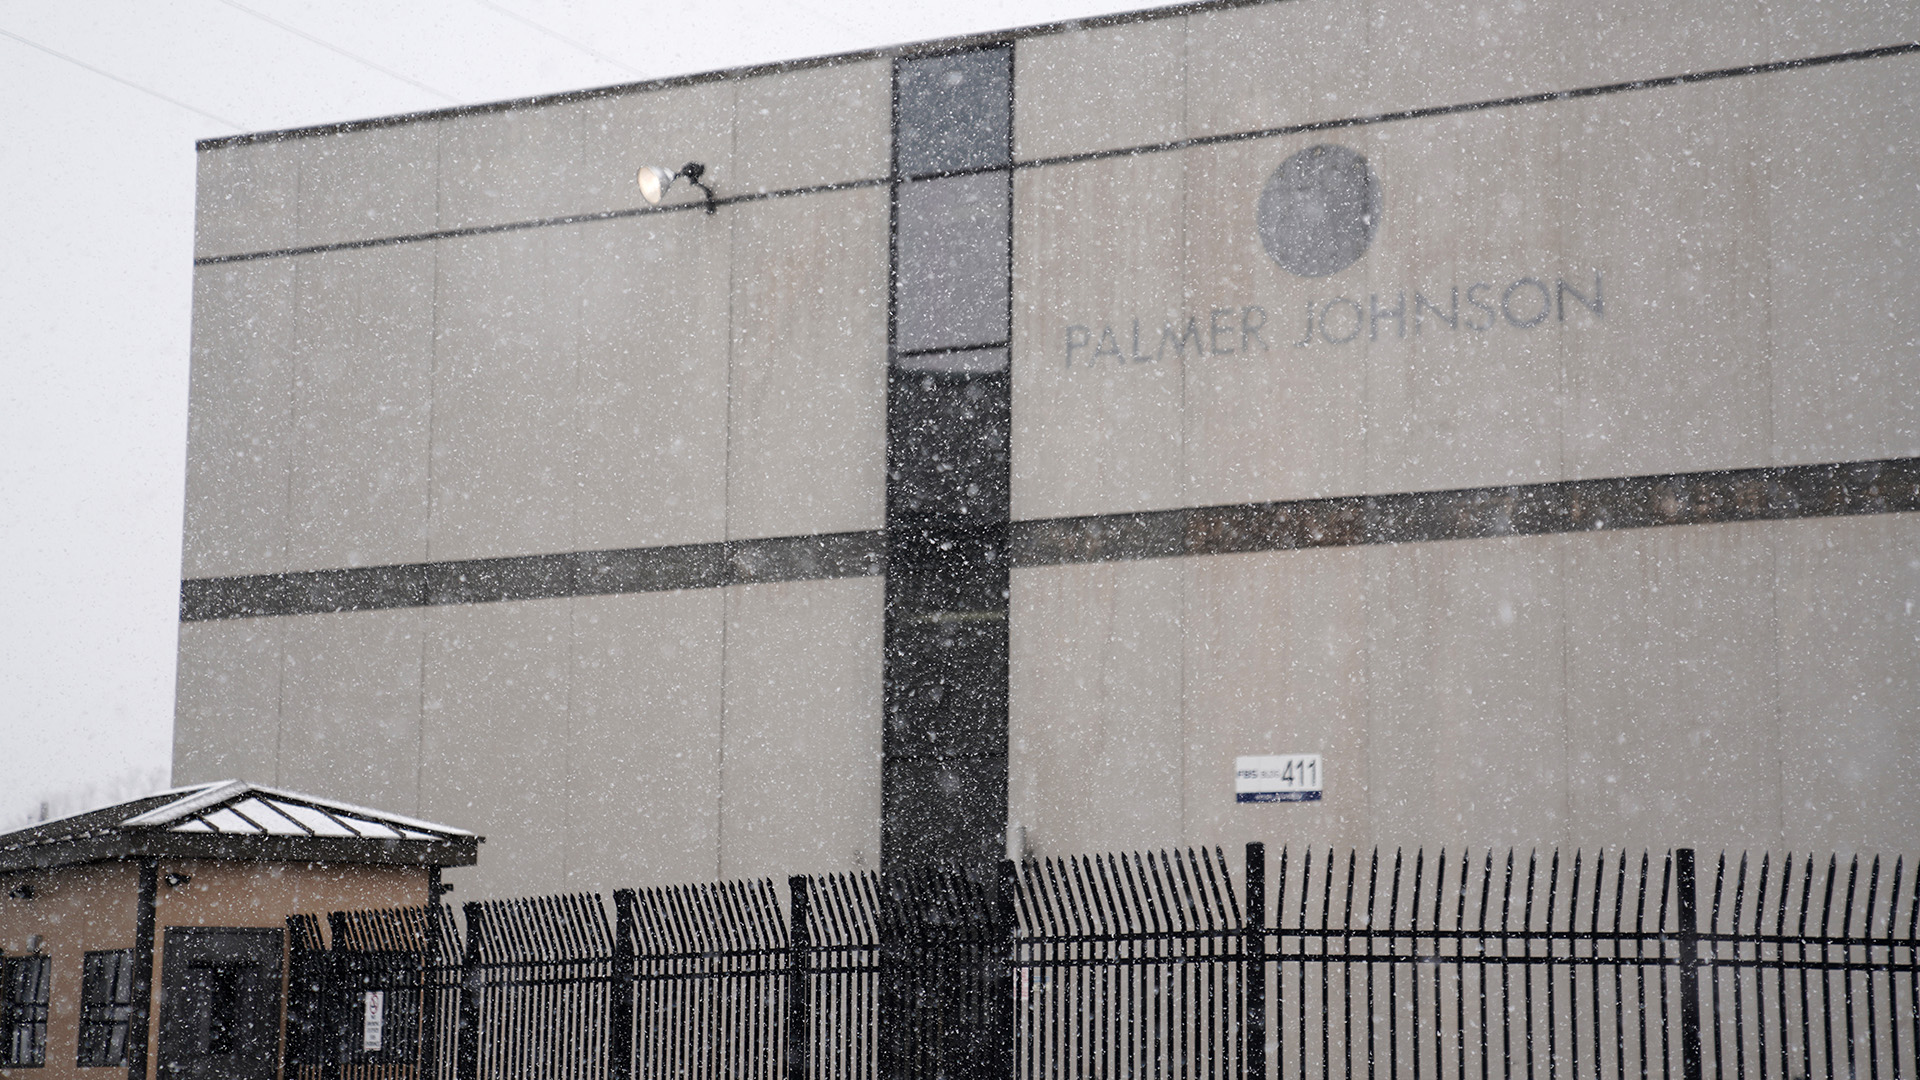 L'edificio a più piani si caratterizza per il viraggio di colore dove indicano il logo e lo slogan testuale "Palmer Johnson" In precedenza era disposto, con una stanza di guardia e una recinzione in ferro battuto nella parte anteriore e neve che volava nell'aria.